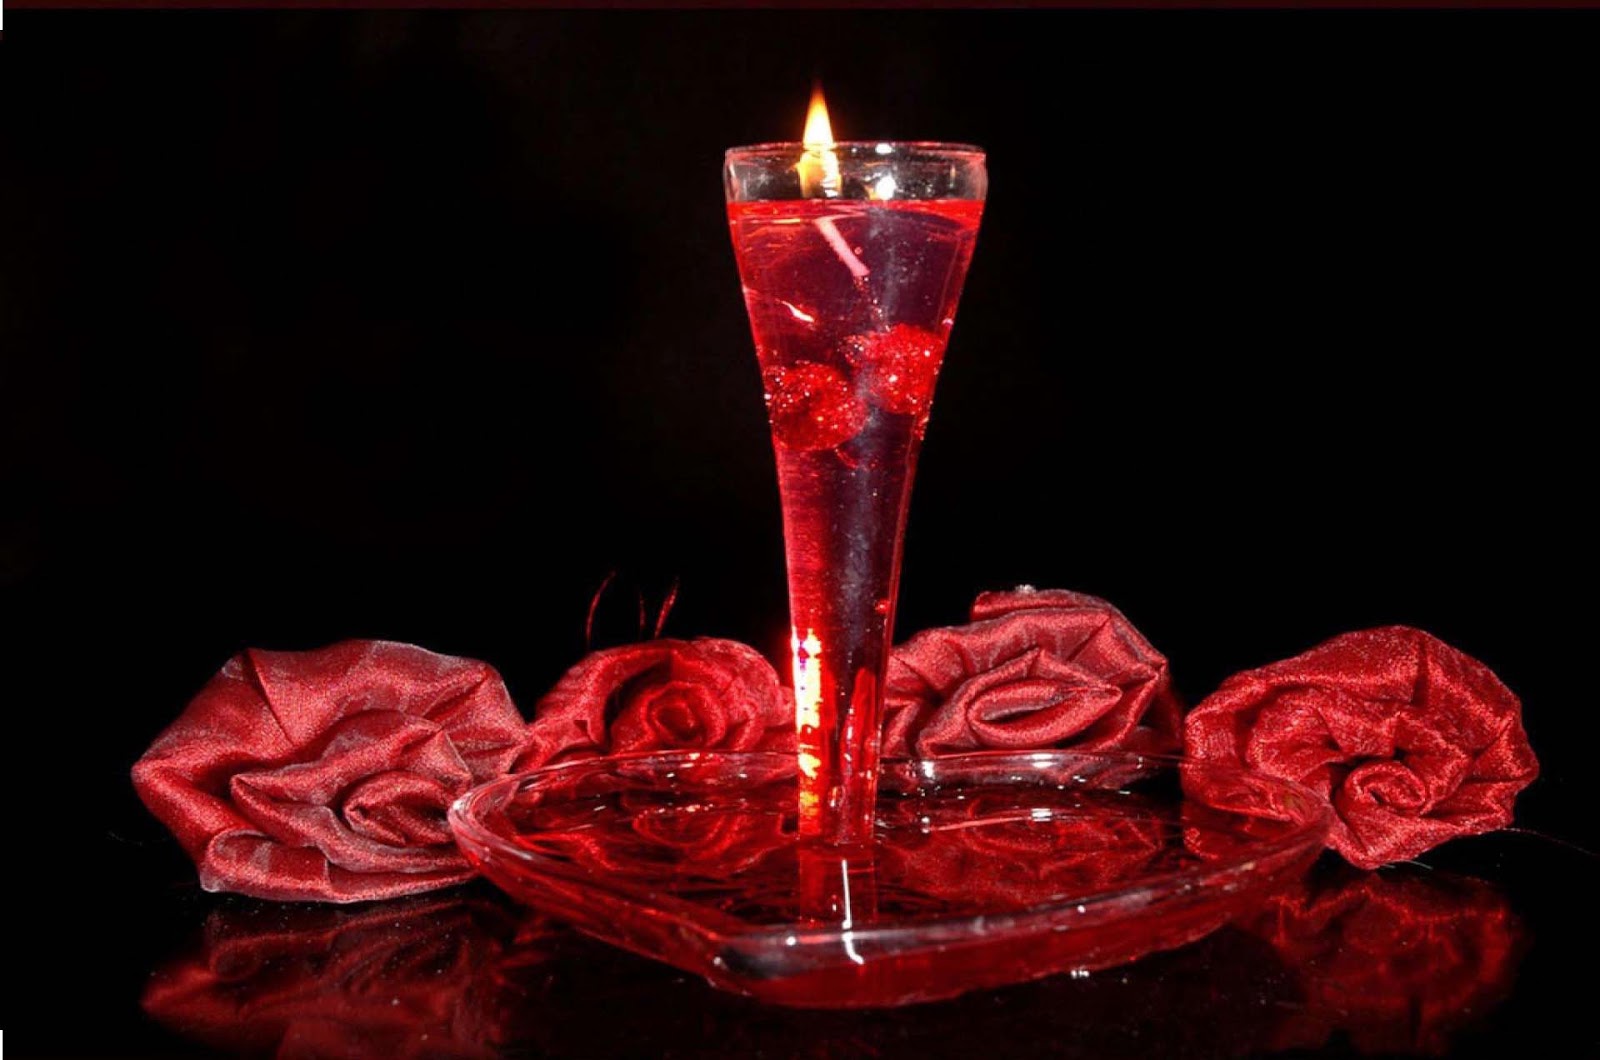 felice giorno di rose carta da parati,rosso,fotografia di still life,illuminazione,calici di champagne,bicchiere